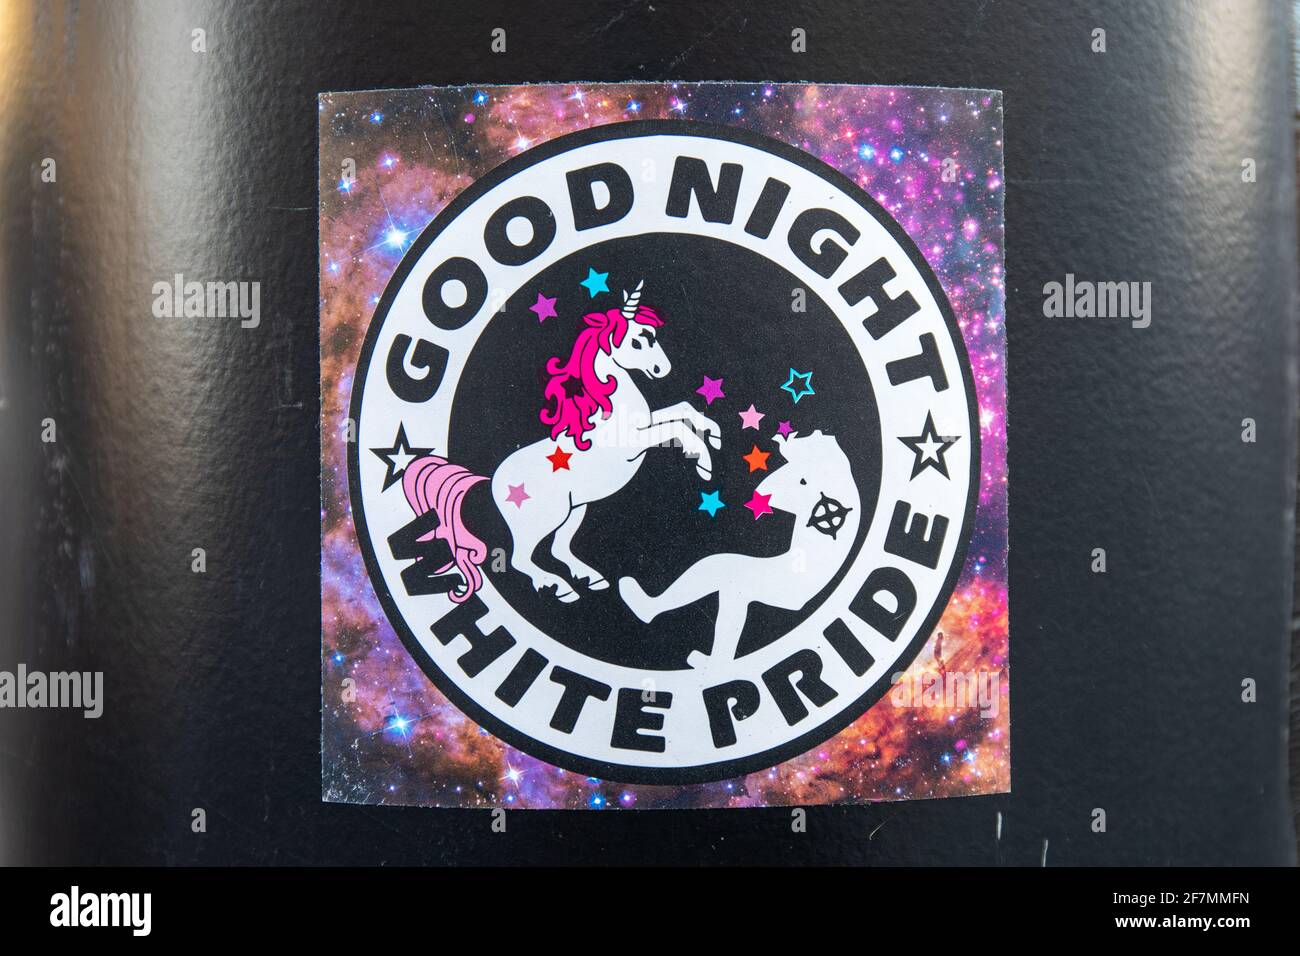 Bonne nuit blanche fierté. Autocollant anti-racisme sur un poteau lumineux à Helsinki, Finlande. Banque D'Images